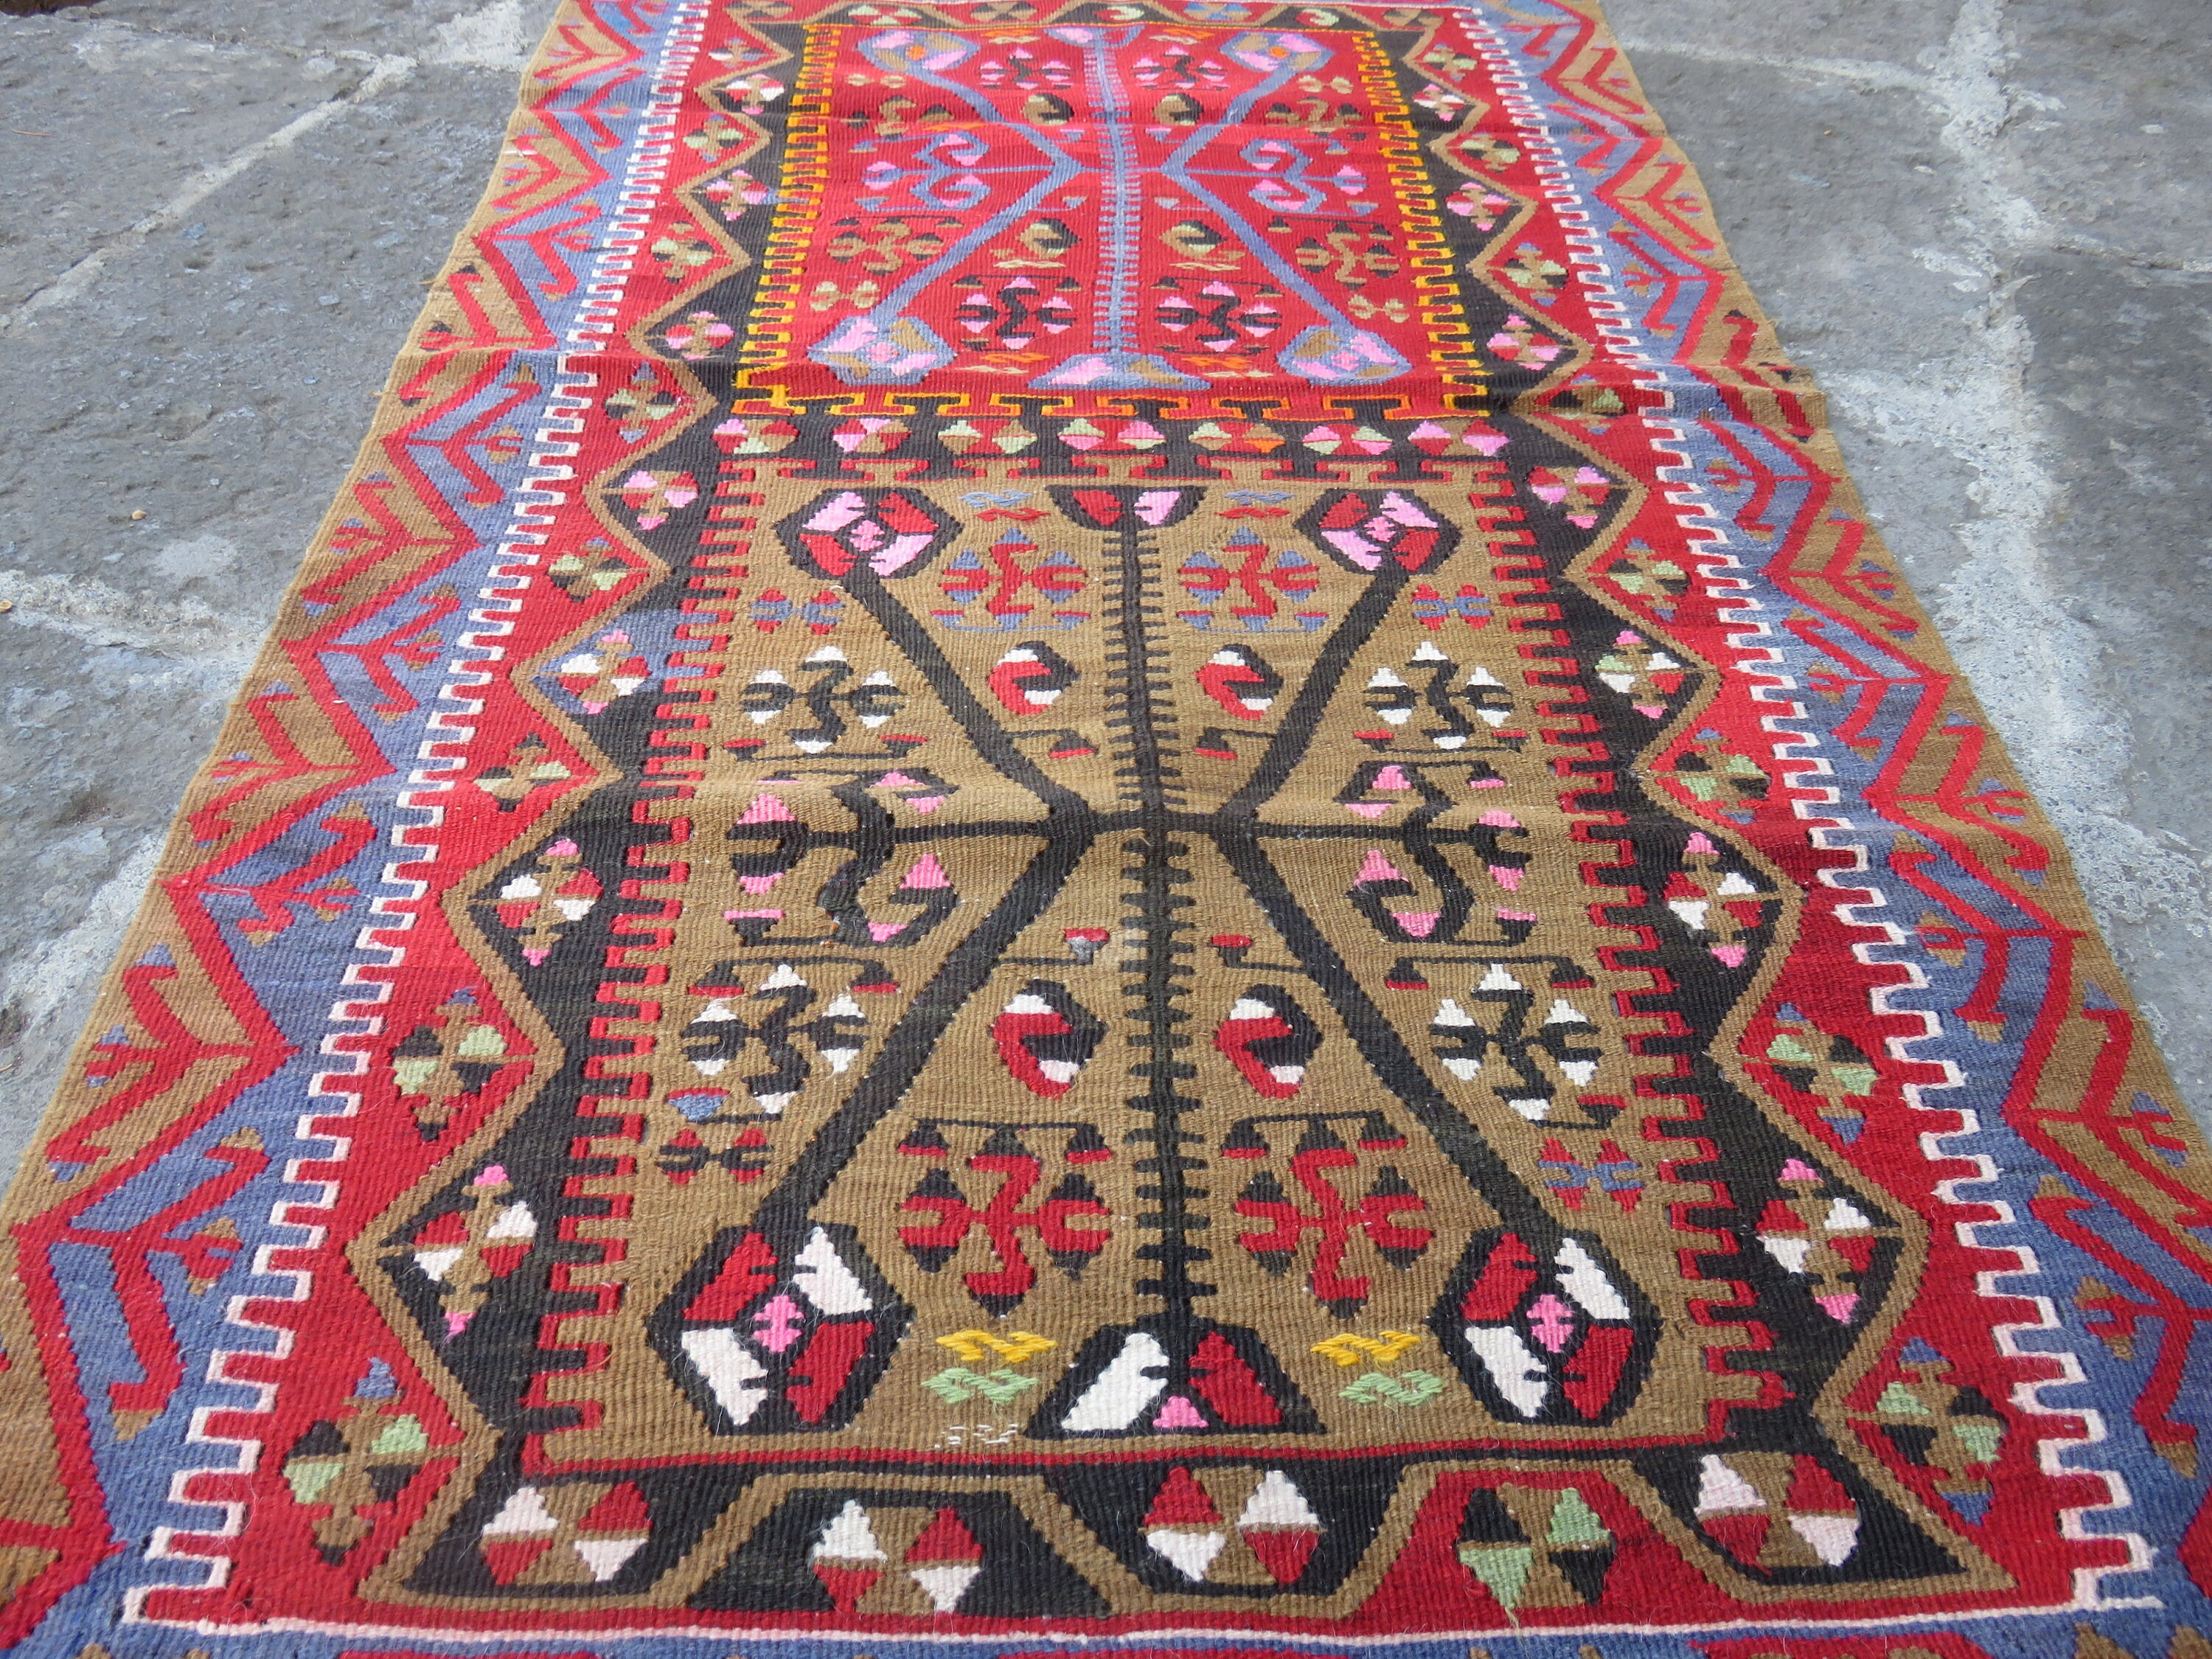 Turkish kilim kayseri Kilim rug vintage Home decor kilim 2.8x5.3 ft Kilim Wool Kilim Teppich Kilim rug